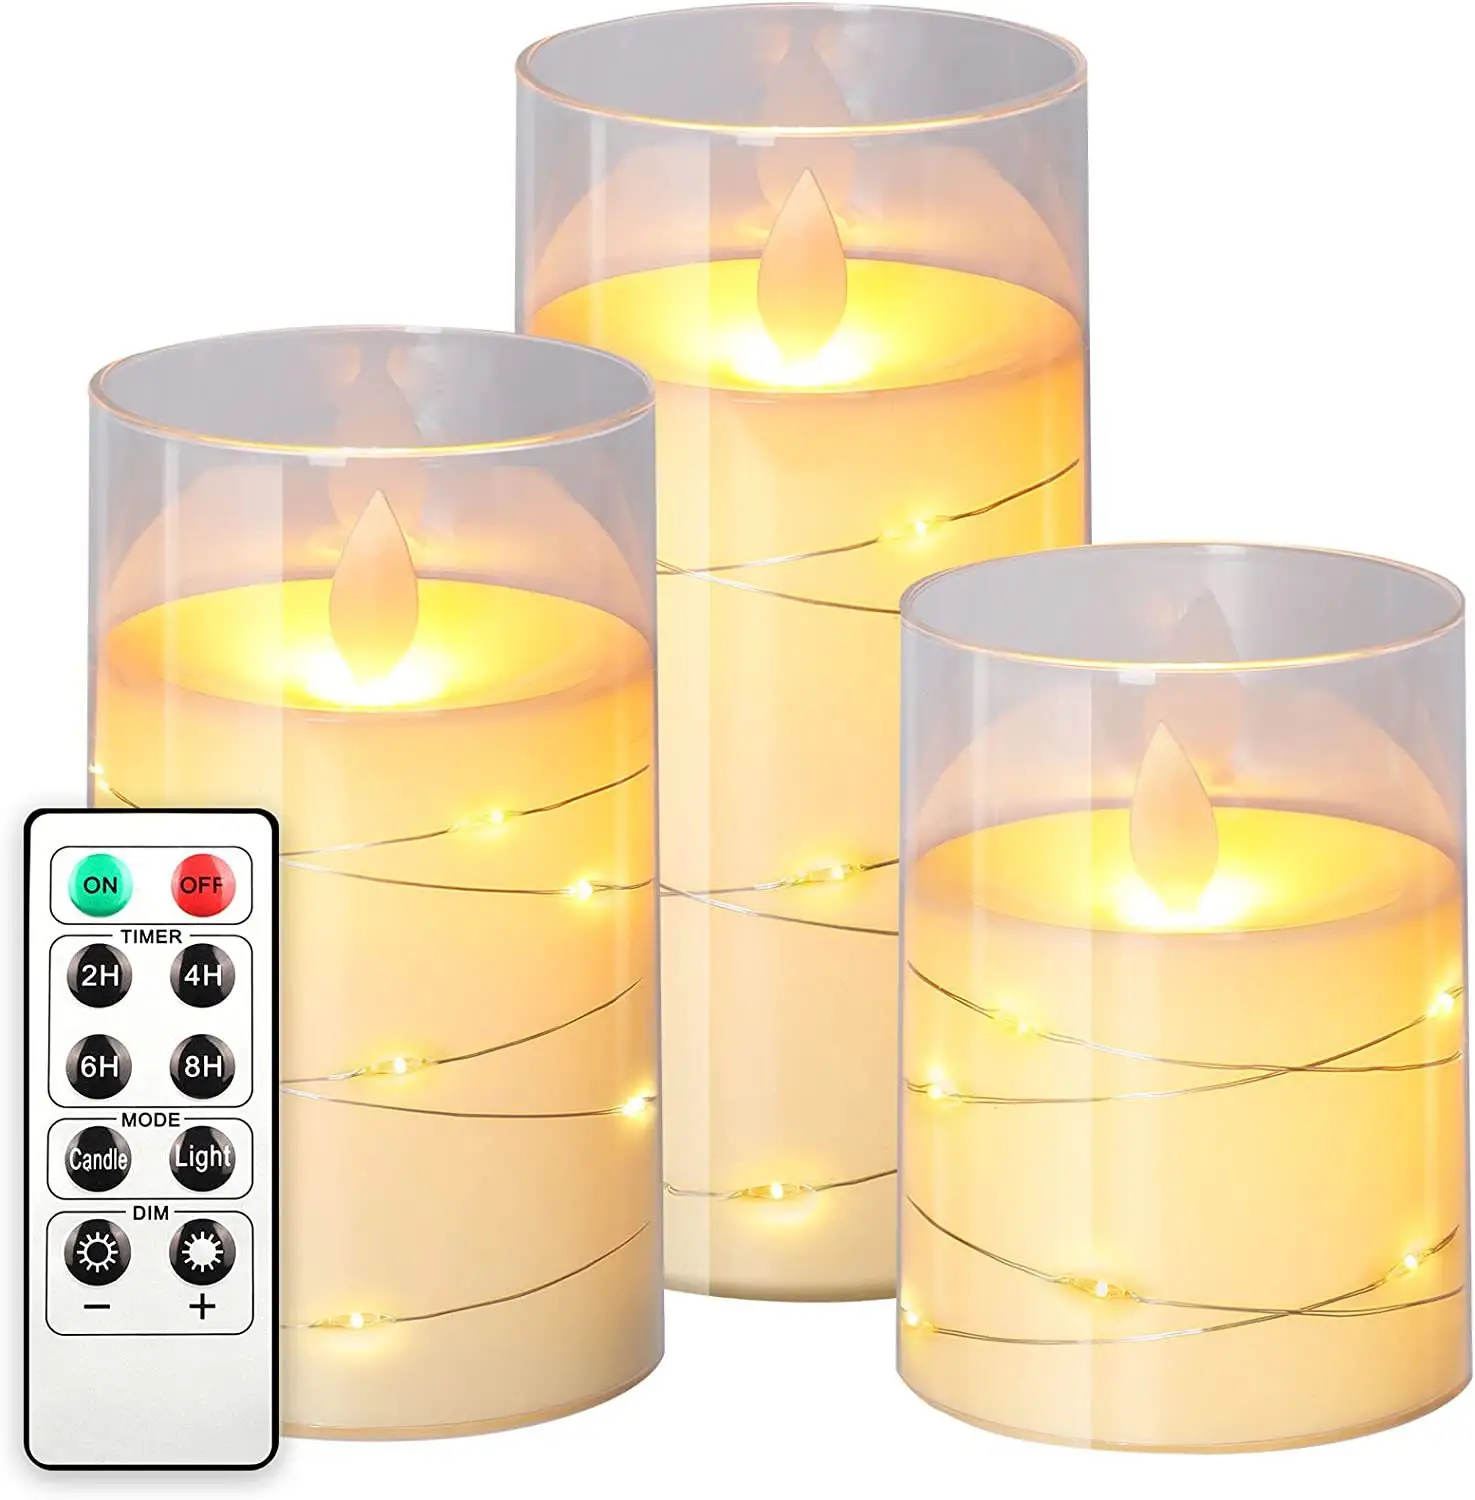 Lilin pilar daya dioperasikan baterai LED, Lilin tanpa api kaca akrilik dengan Strip LED untuk dekorasi rumah